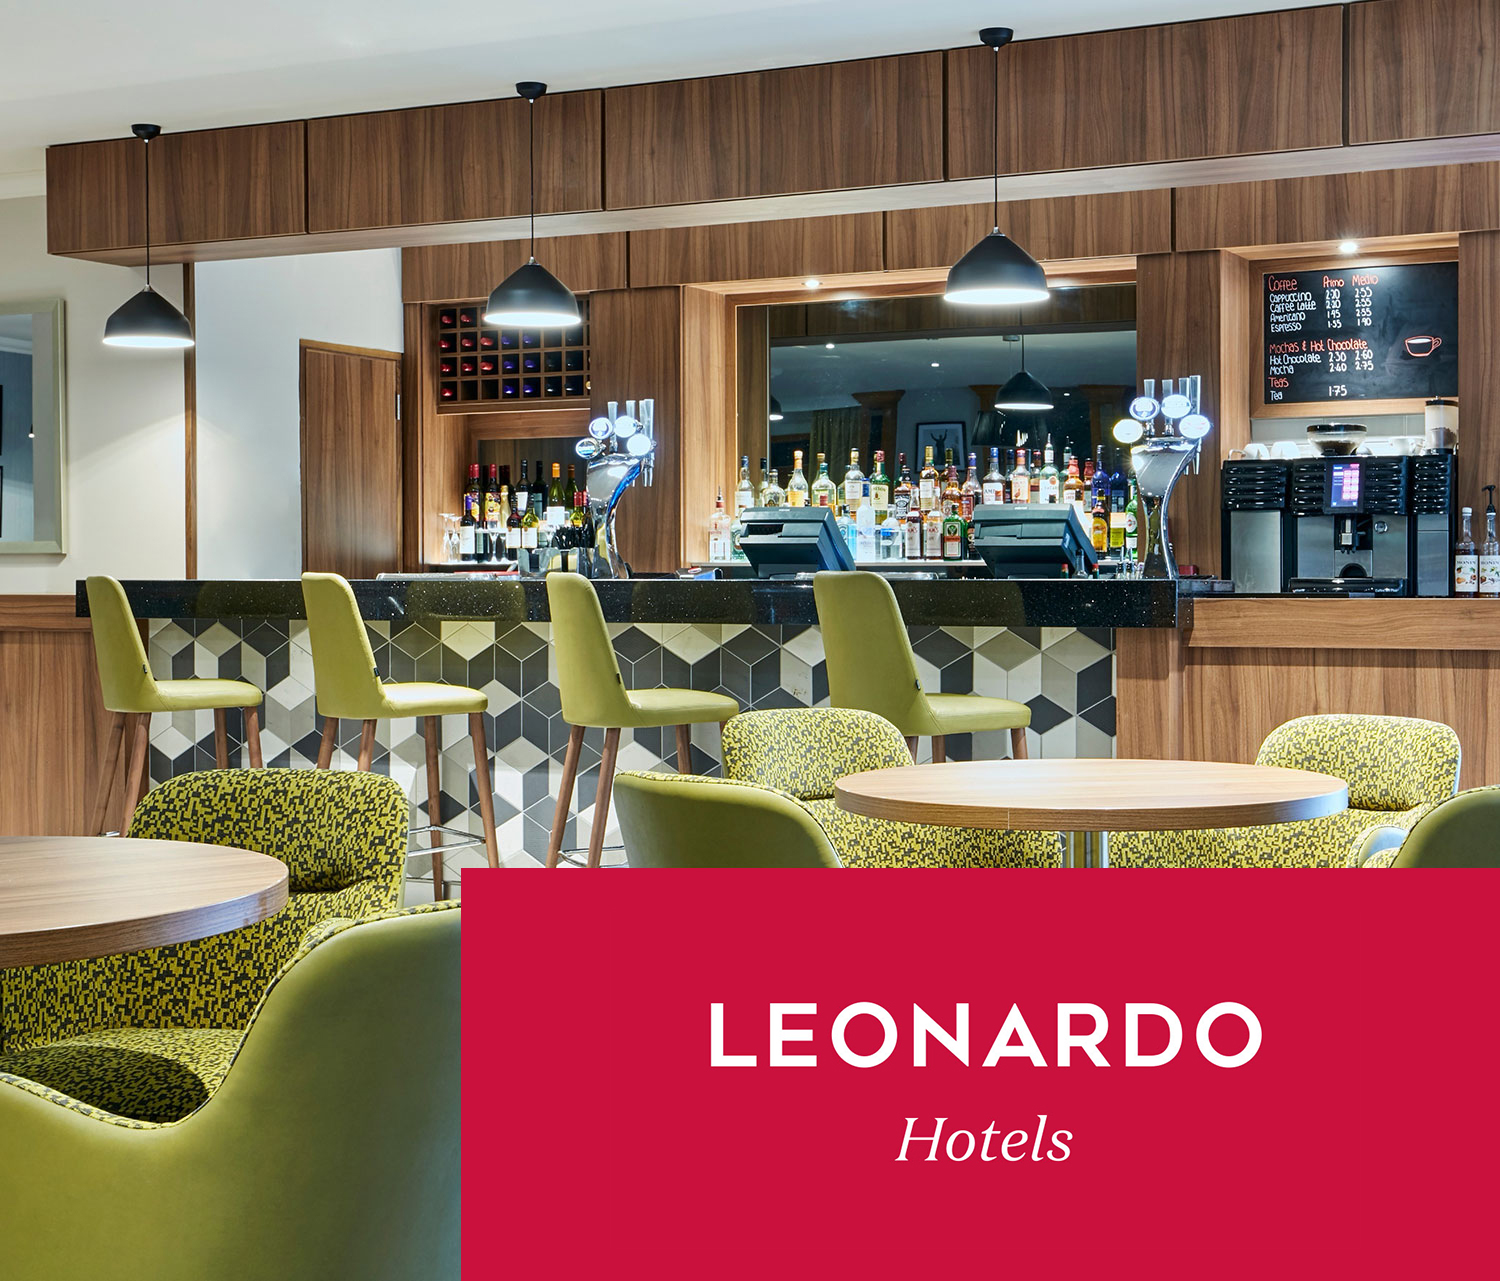 Leonardo Hotel Cheltenham